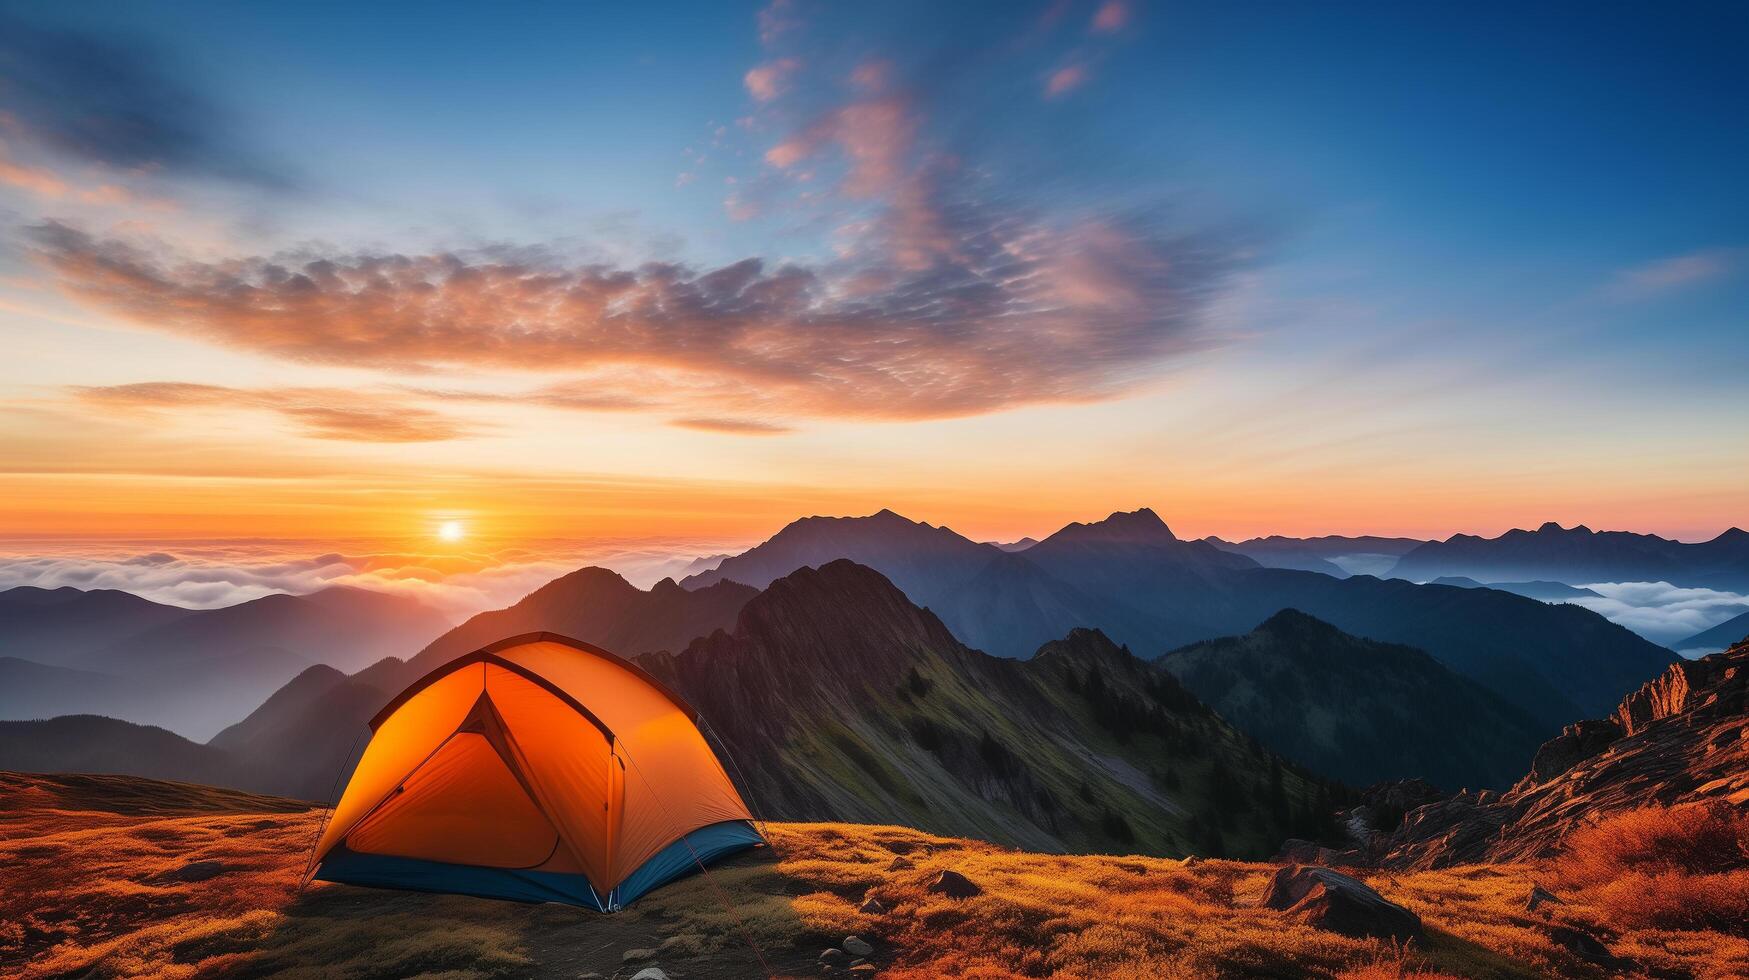 tranquilo montanha pico com acampamento barraca, dourado nascer do sol foto